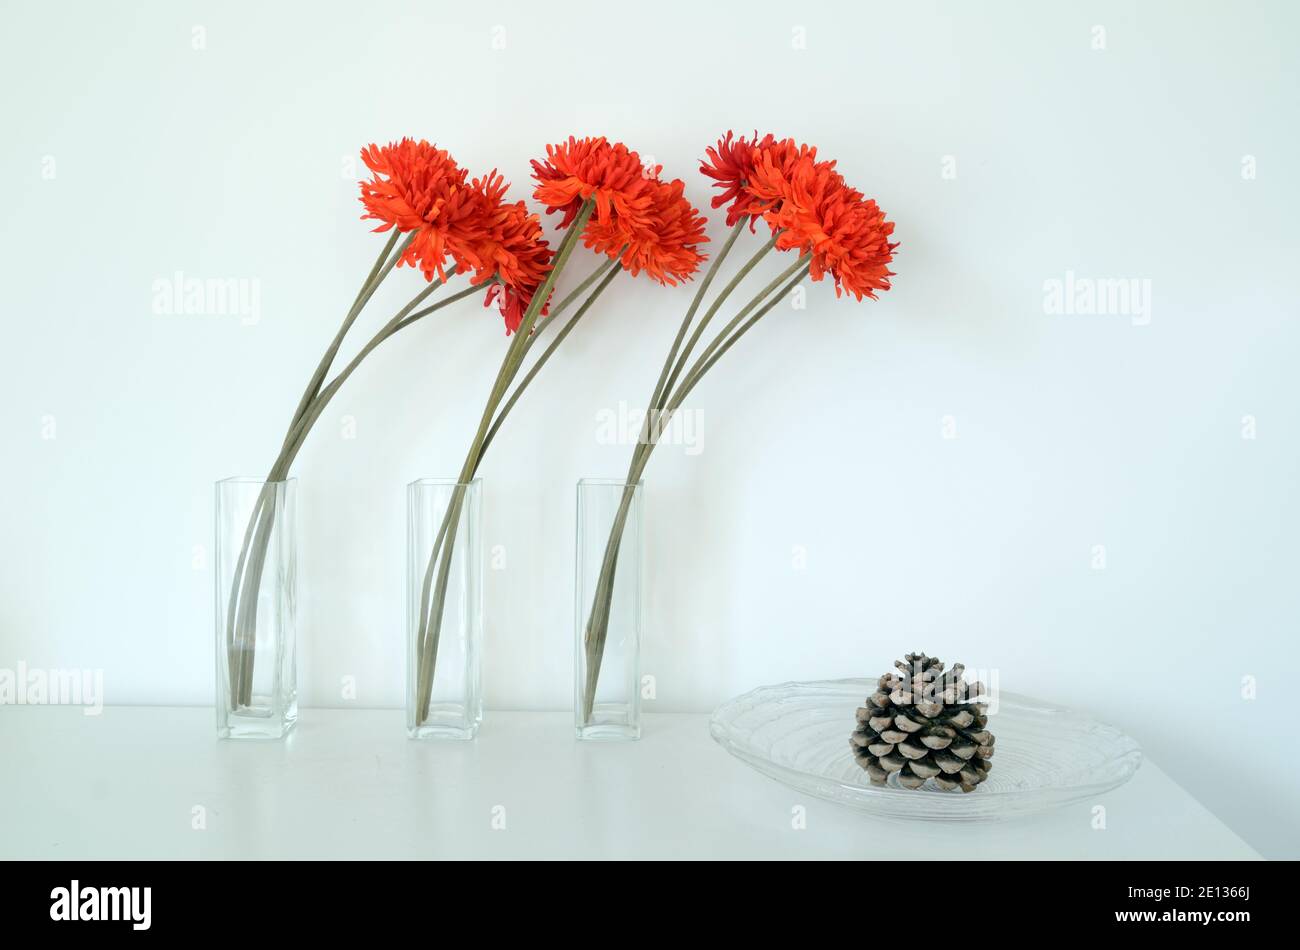 Abstract Stillleben mit drei orange-roten Nelken Blumen & Kiefer Kegel in Glas Vasen gegen weißen Hintergrund Stockfoto